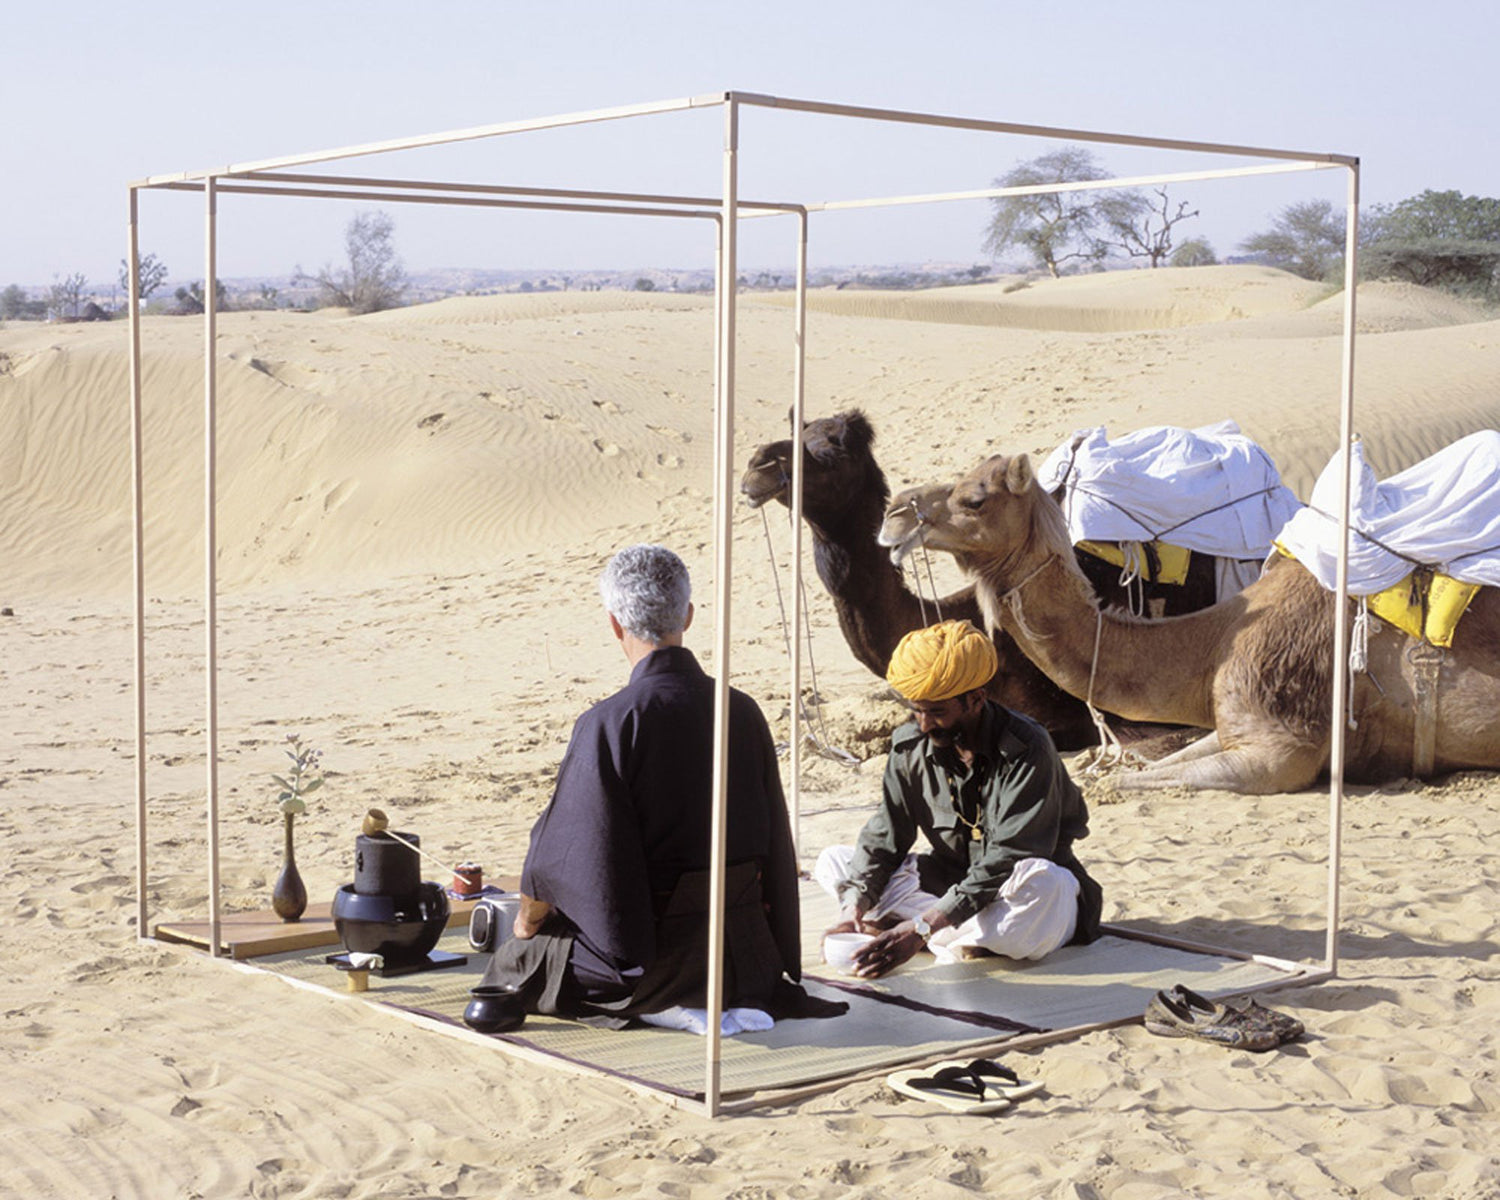 img src=”image.jpg” alt=”Pierre having tea in the desert” /